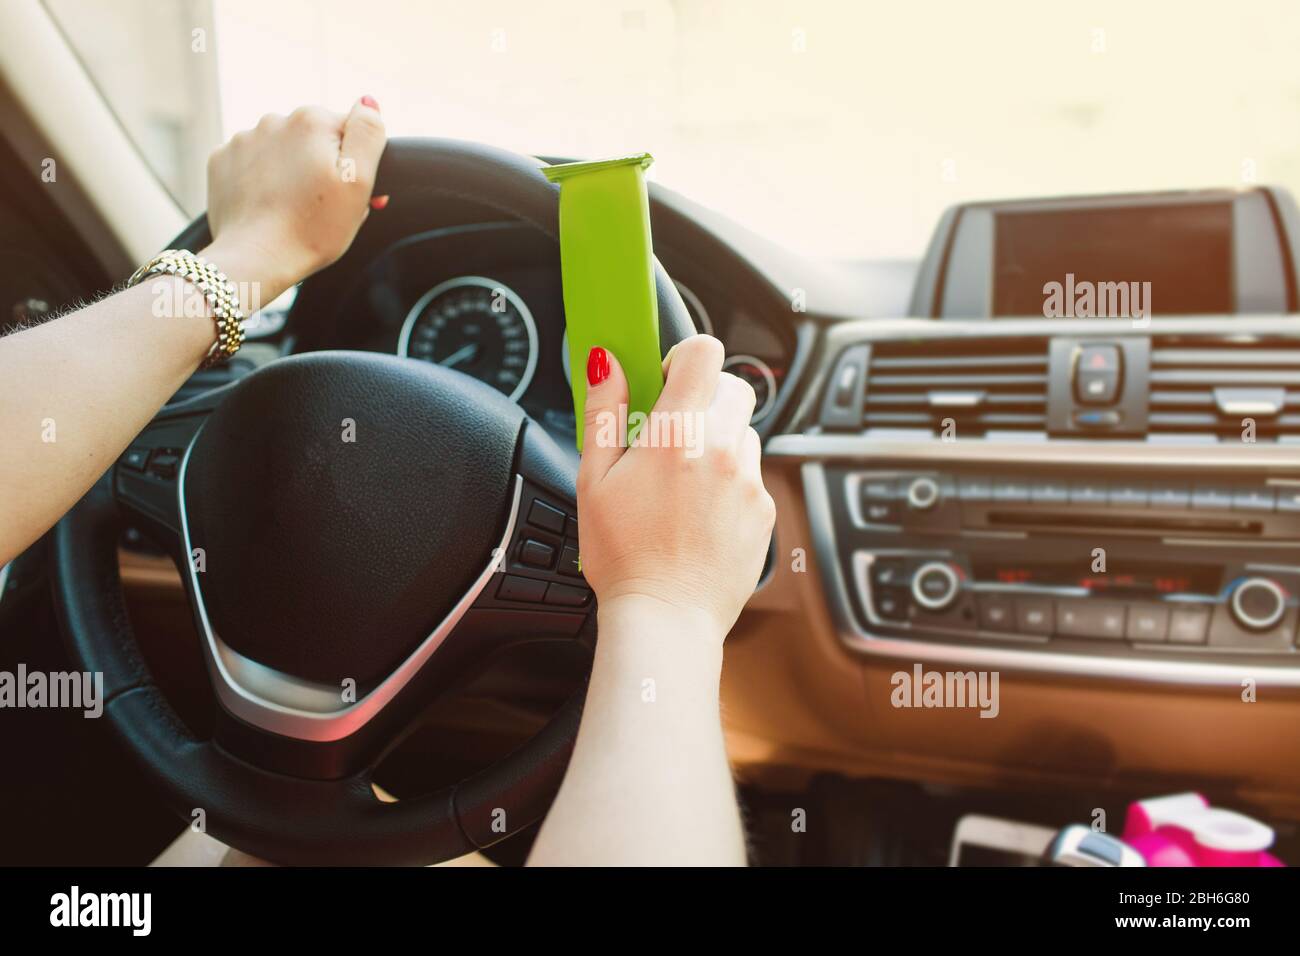 Weibliche Hände halten einen Proteinriegel, während der Fahrt. Nicht im Fokus Armaturenbrett Auto. Gesunde und schnelle Lebensmittel während der Fahrt Stockfoto